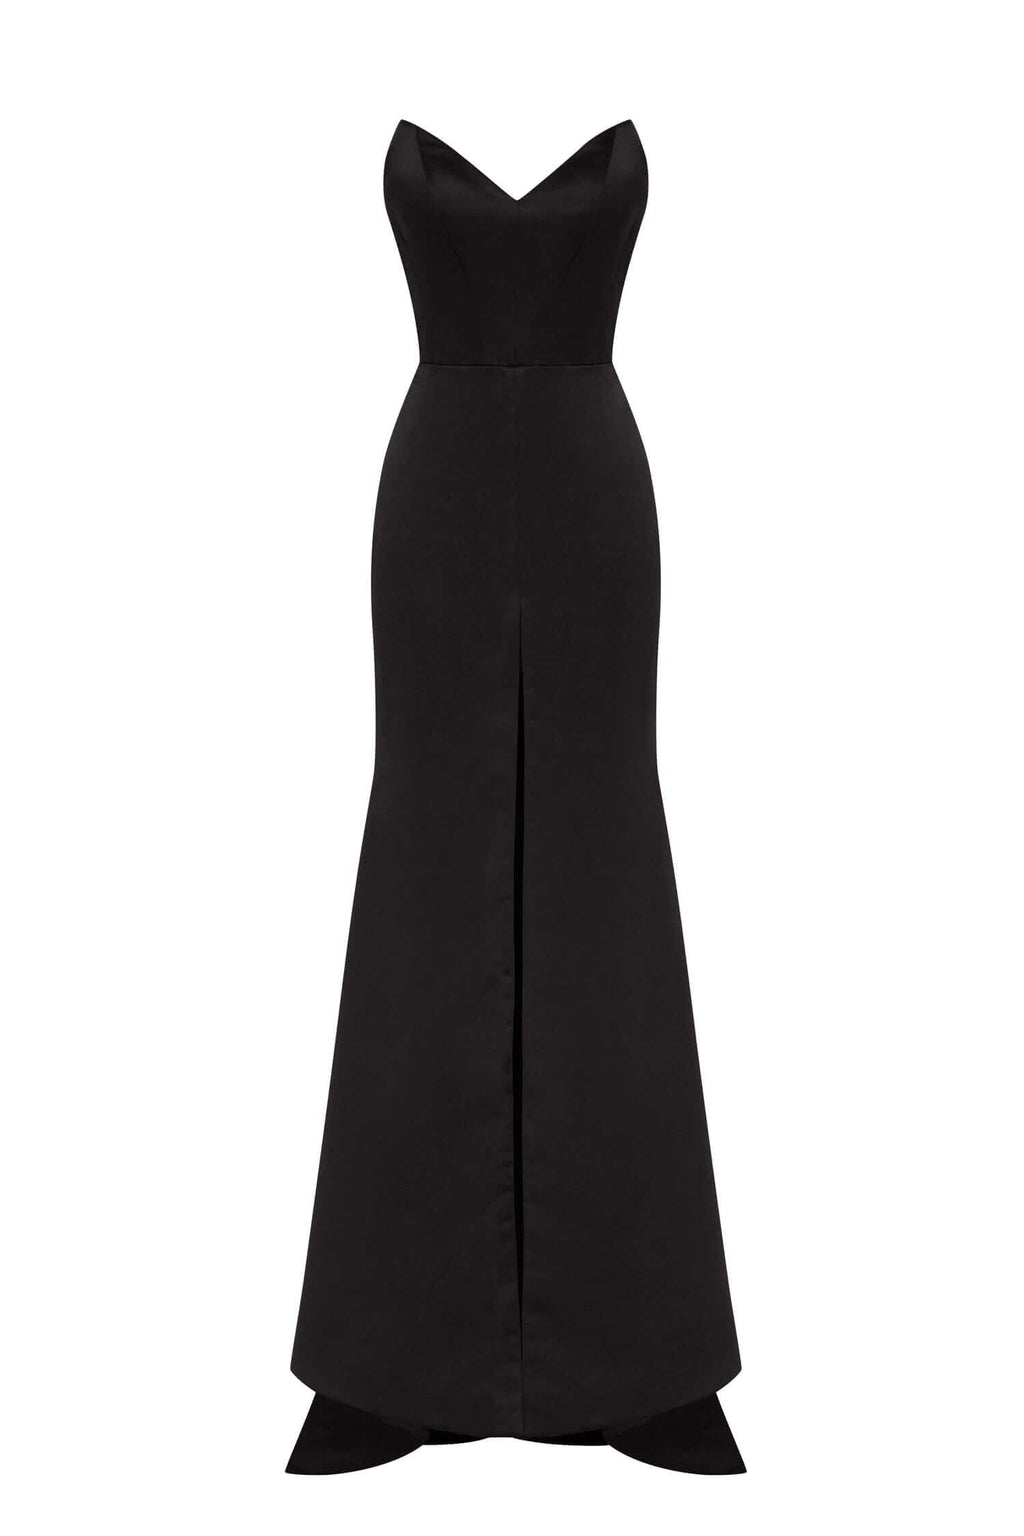 36 Stylish And Comfy Black Summer Dresses - Styleoholic